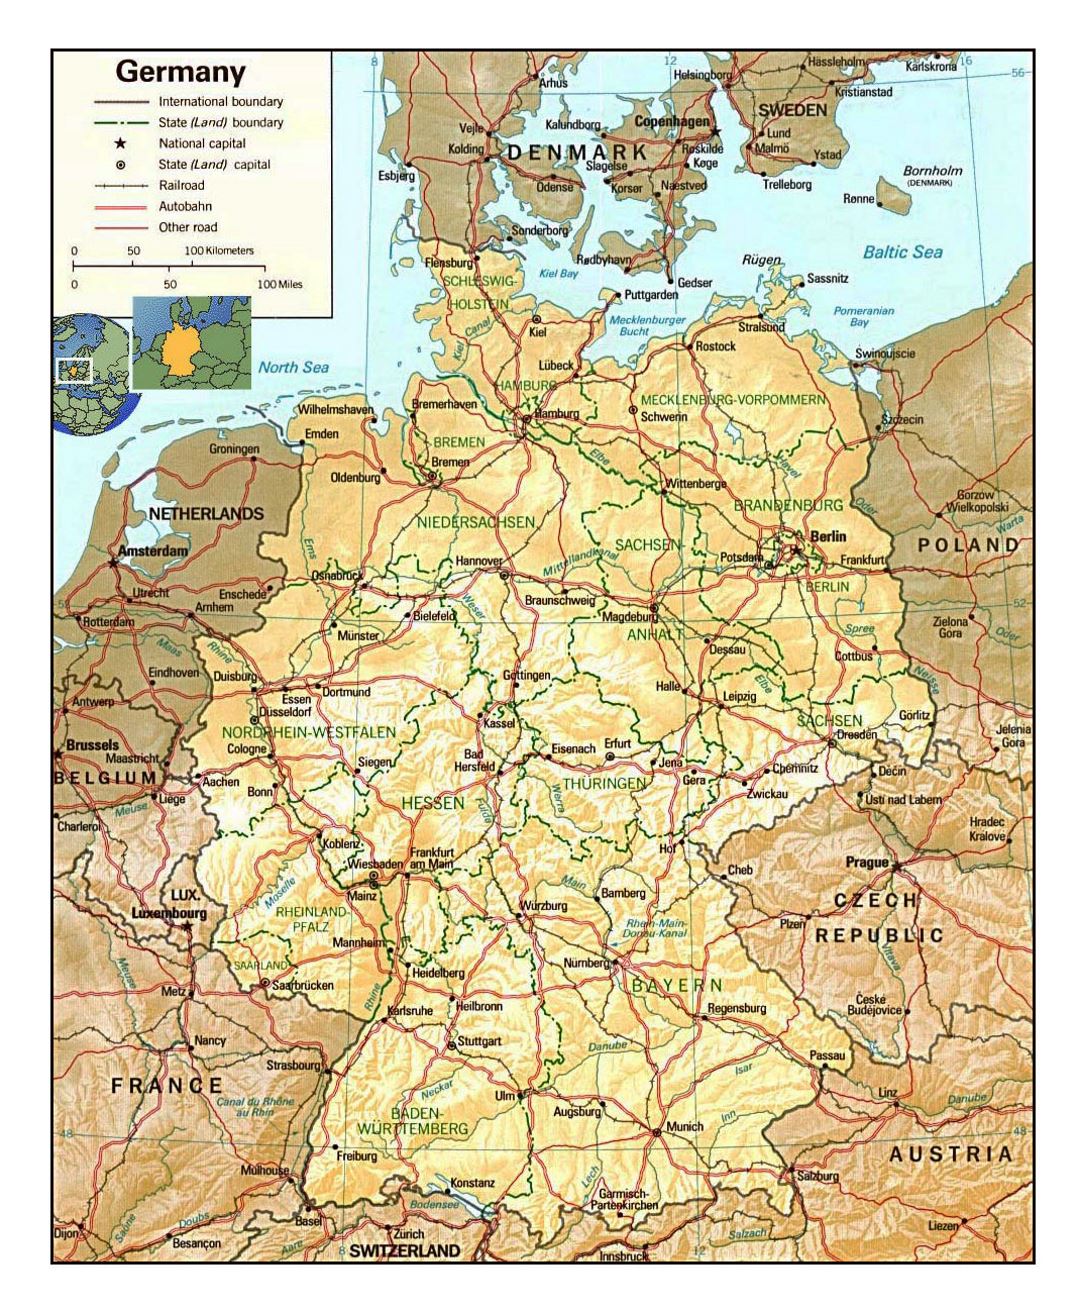 Mapa político y administrativo detallado de Alemania con alivio